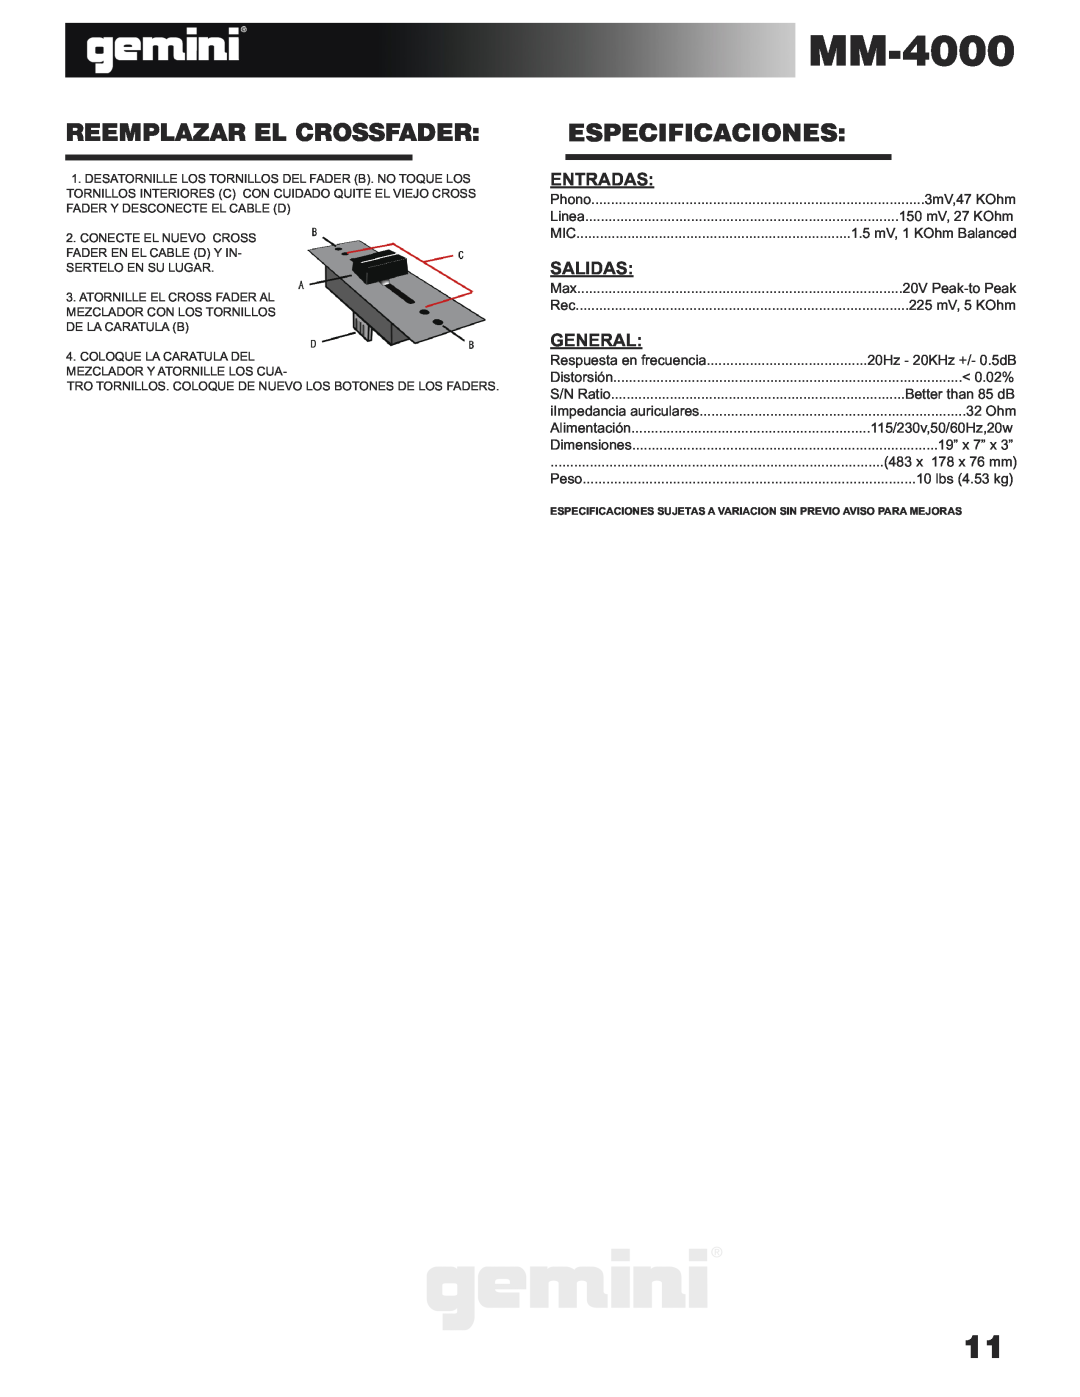 Gemini MM-4000 manual Reemplazar El Crossfader, Especificaciones, Entradas, Salidas, General 